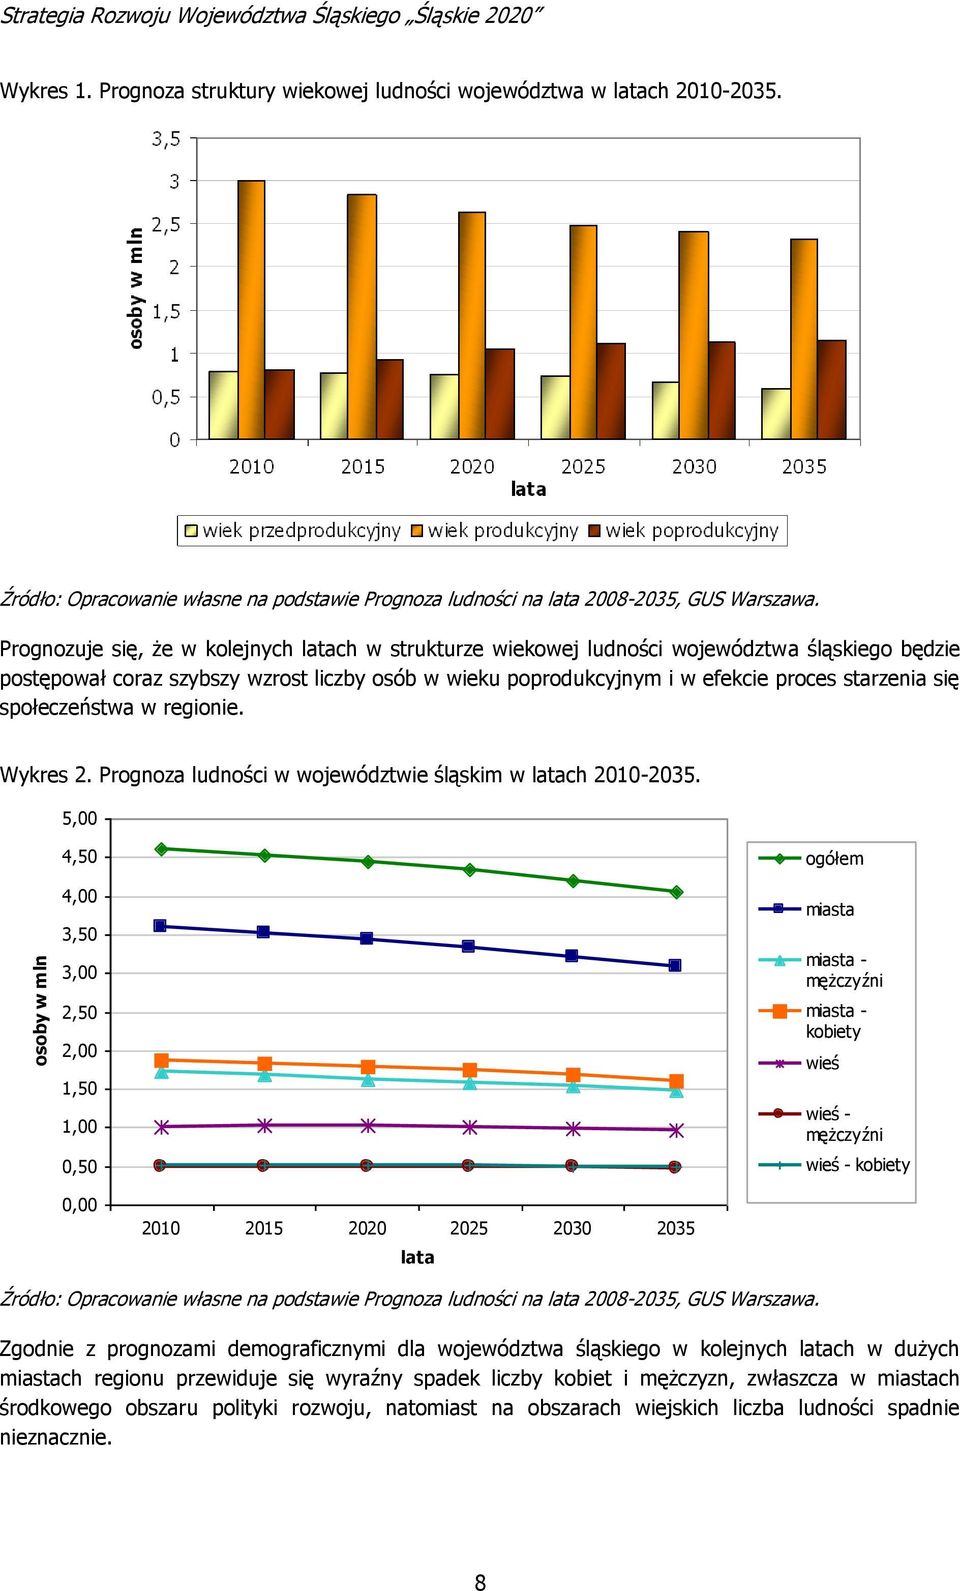 Prognozuje się, że w kolejnych latach w strukturze wiekowej ludności województwa śląskiego będzie postępował coraz szybszy wzrost liczby osób w wieku poprodukcyjnym i w efekcie proces starzenia się